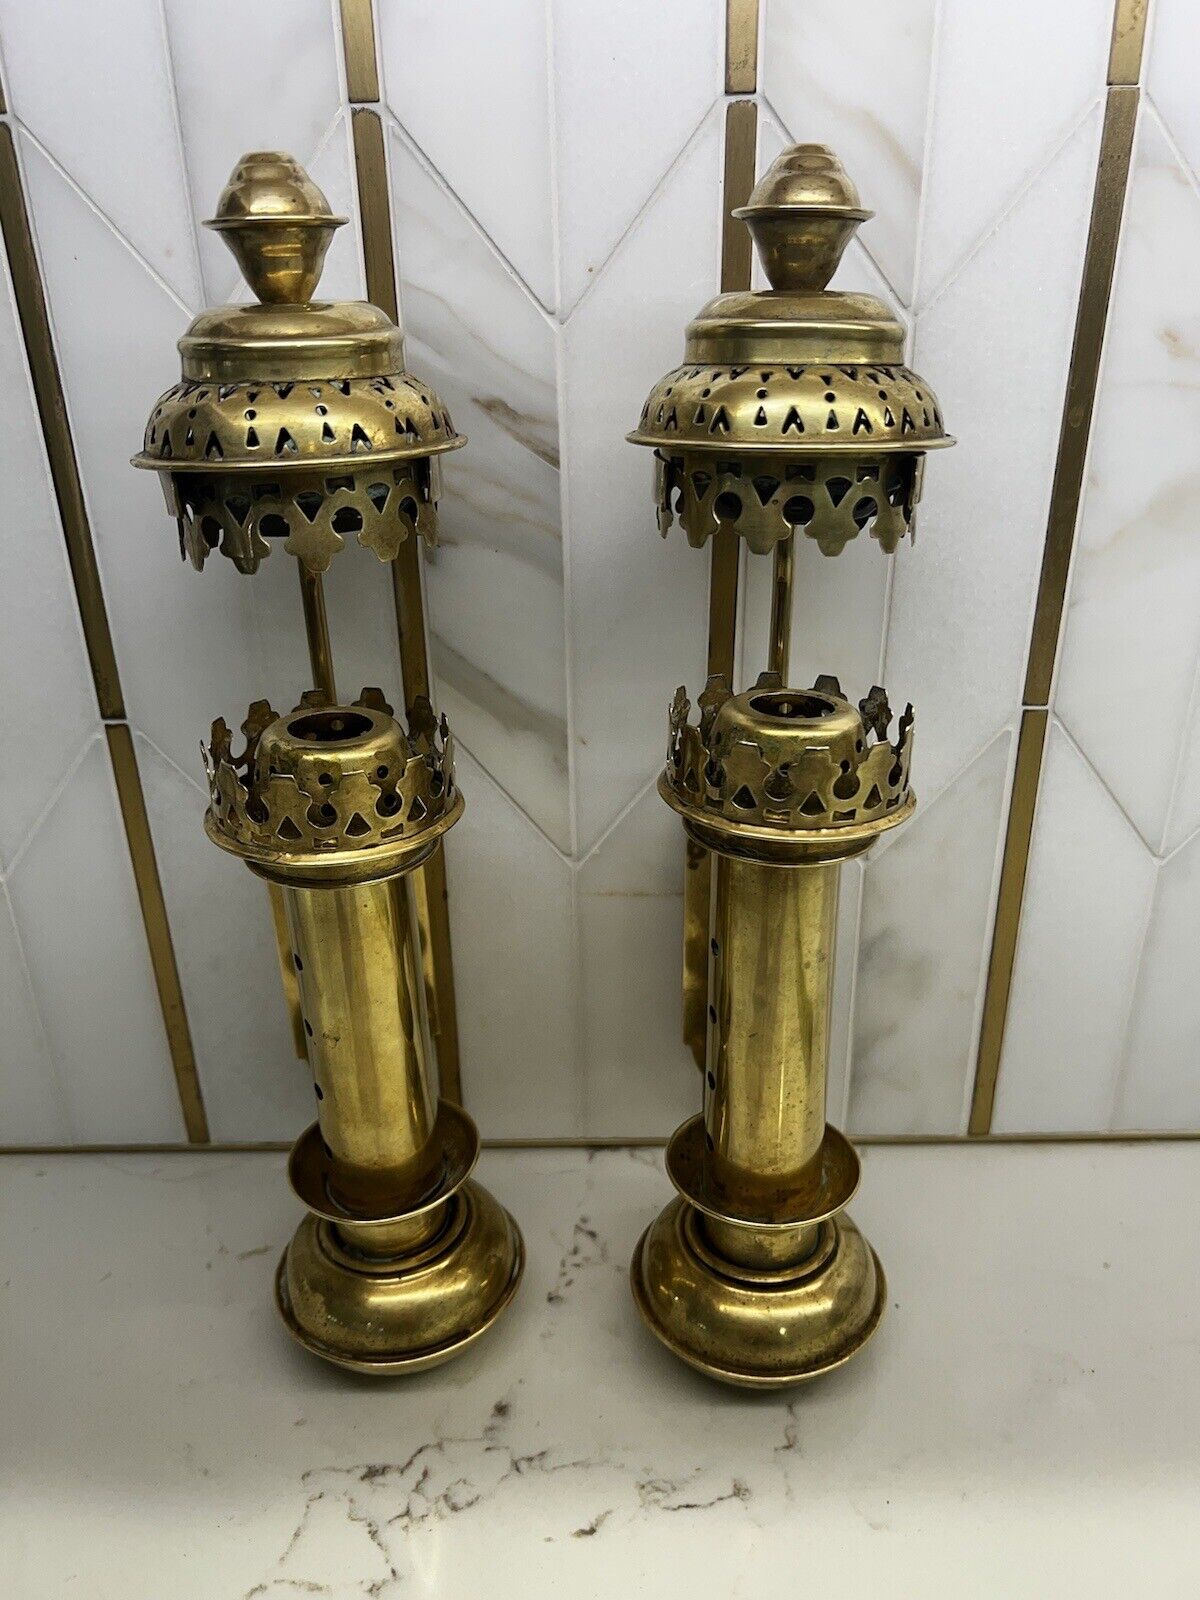 Antique Brass Railroad Lantern Sconces Oil Lamp Vintage Candle Holders Coach